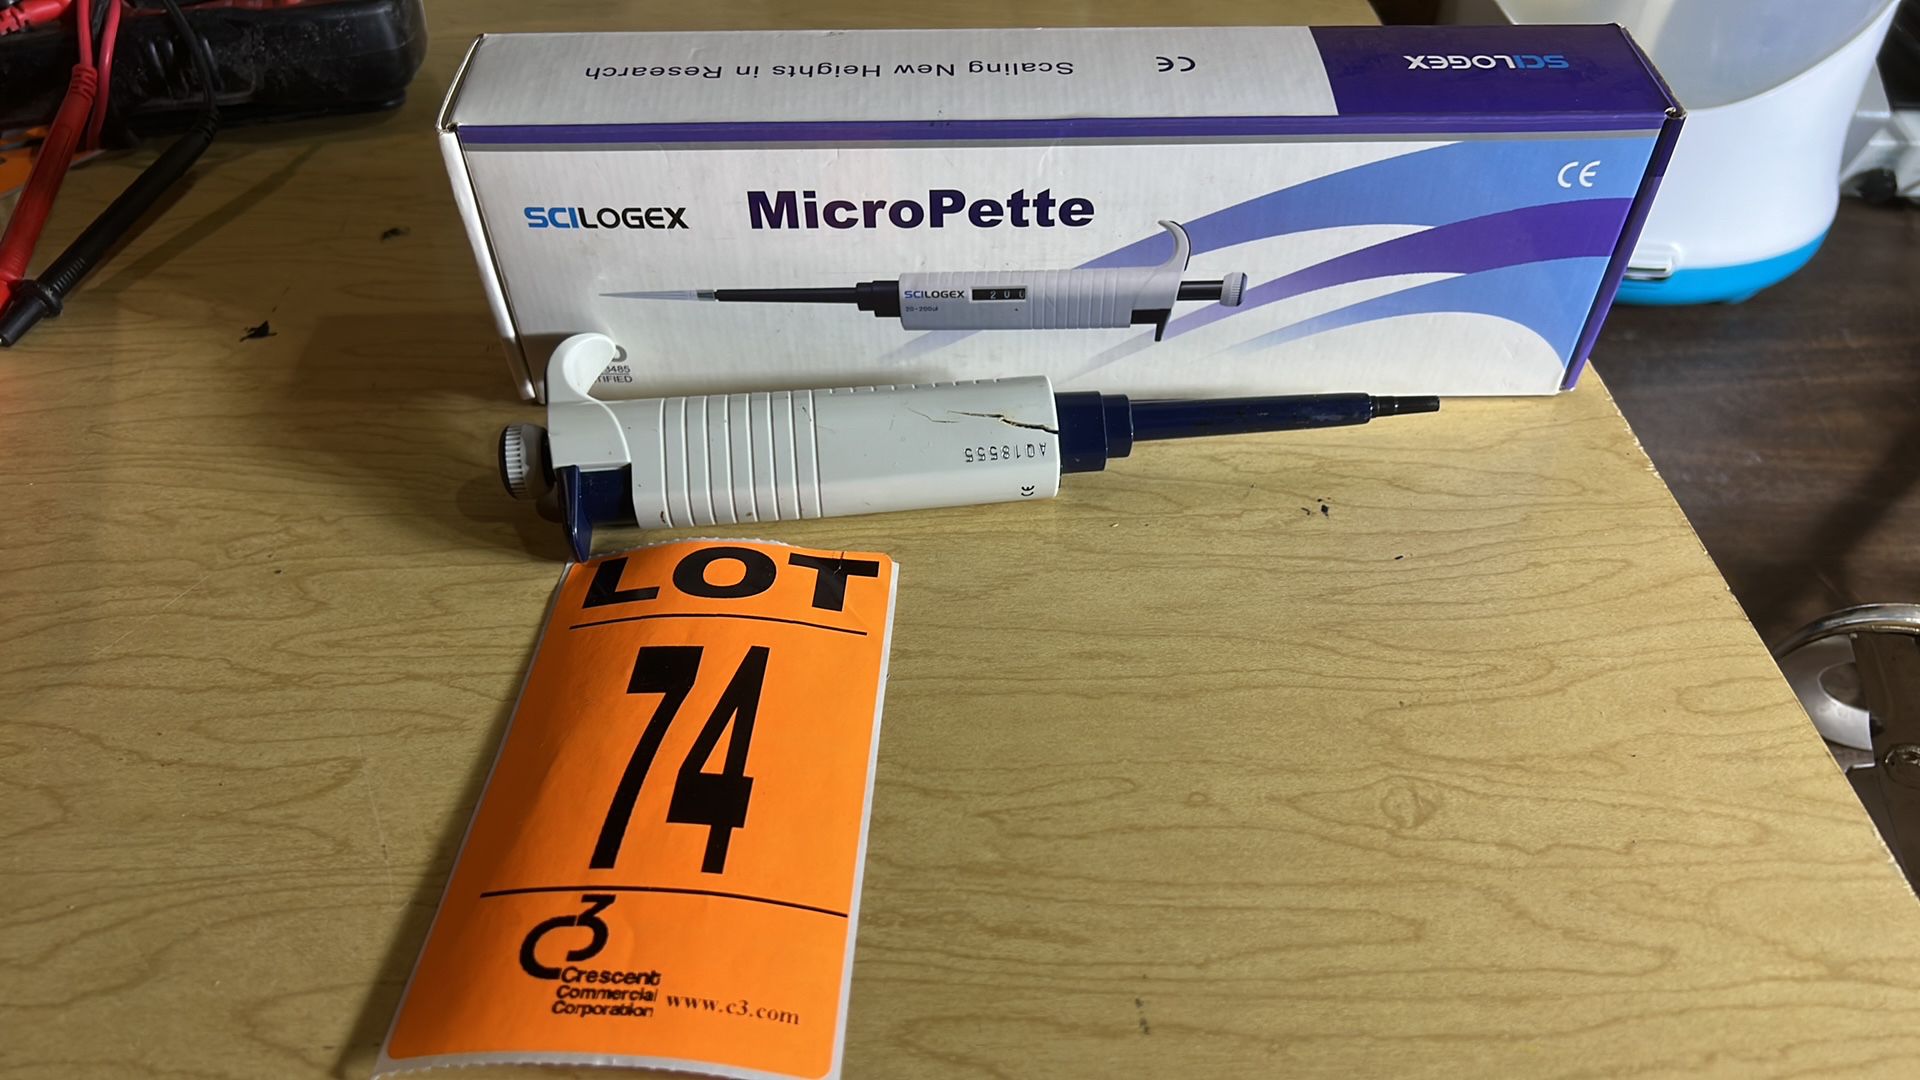 SCILOGEX MicroPette - Image 2 of 2